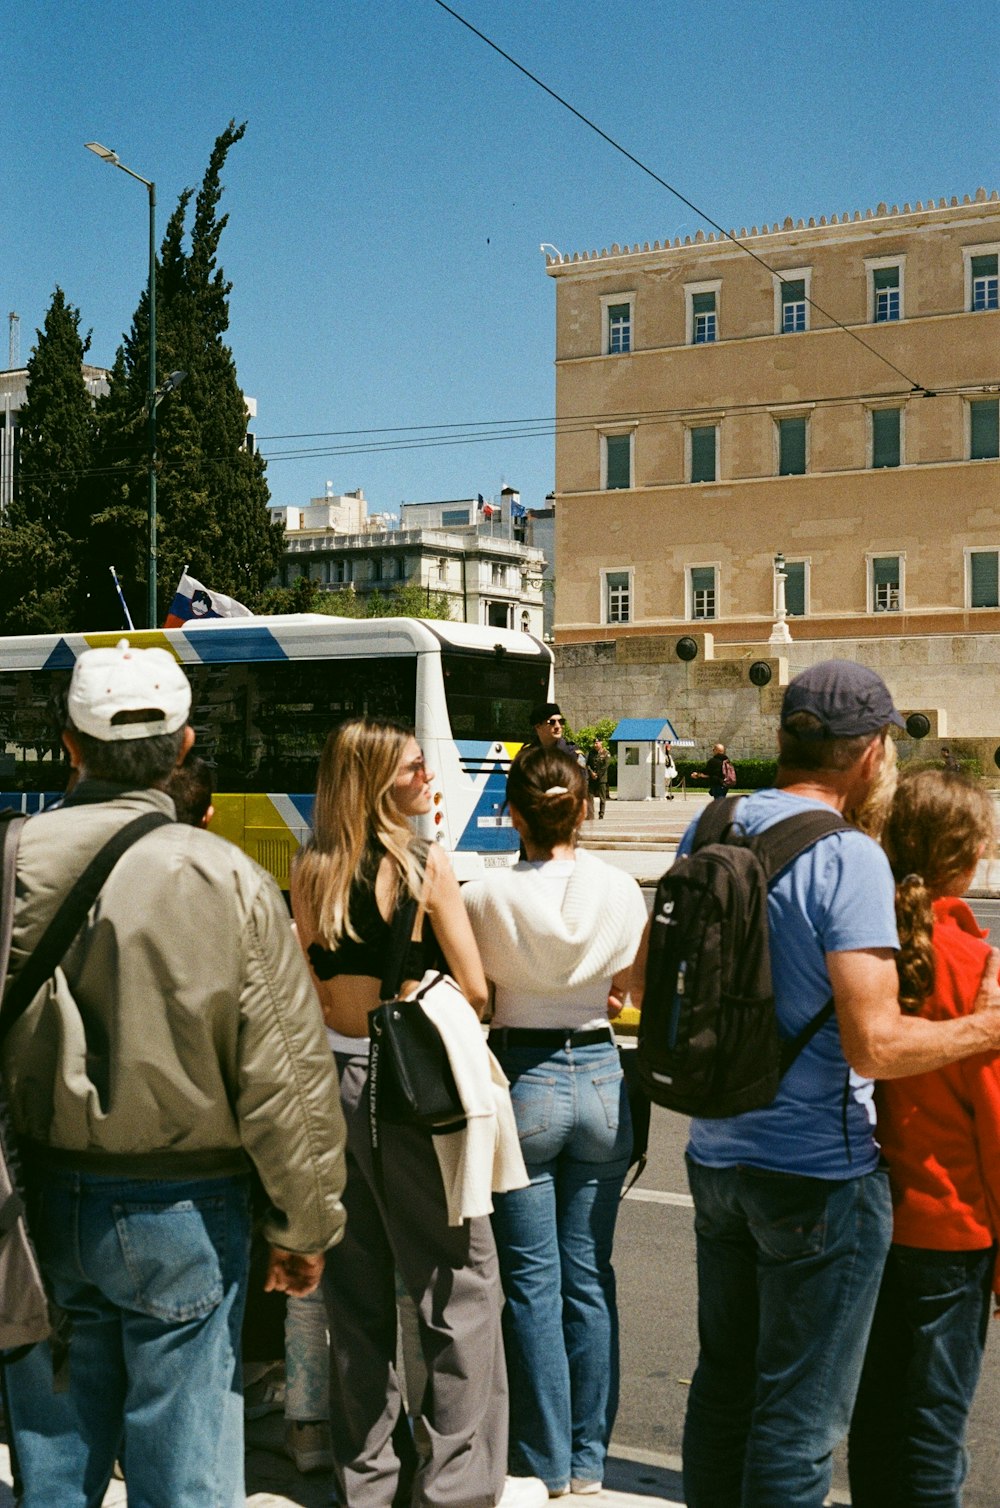 un gruppo di persone in attesa a una fermata dell'autobus